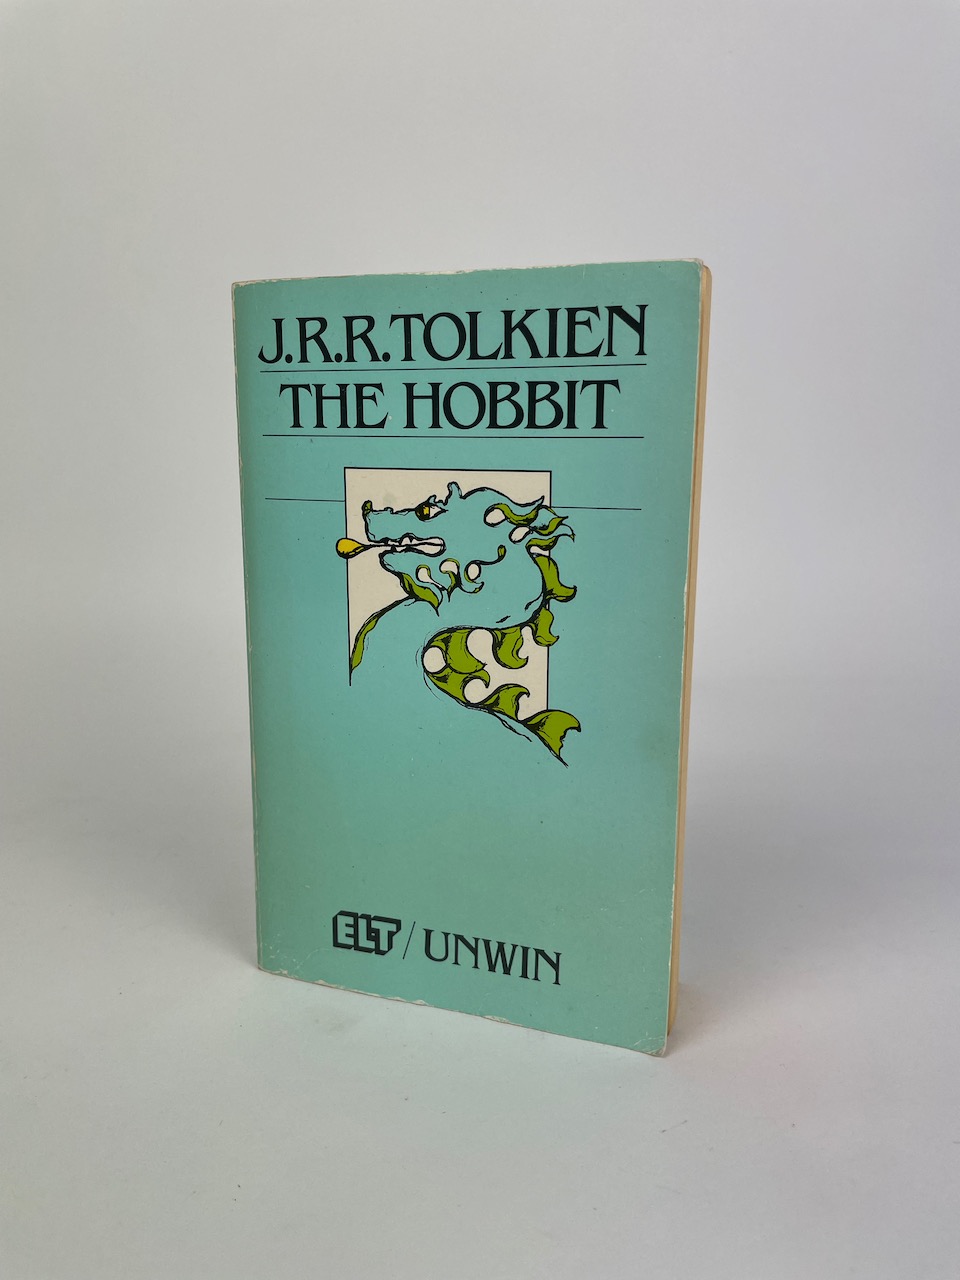 J.R.R. Tolkien: The Hobbit (ELT Edition), published by ELT / Unwin Paperbacks, 1987 1